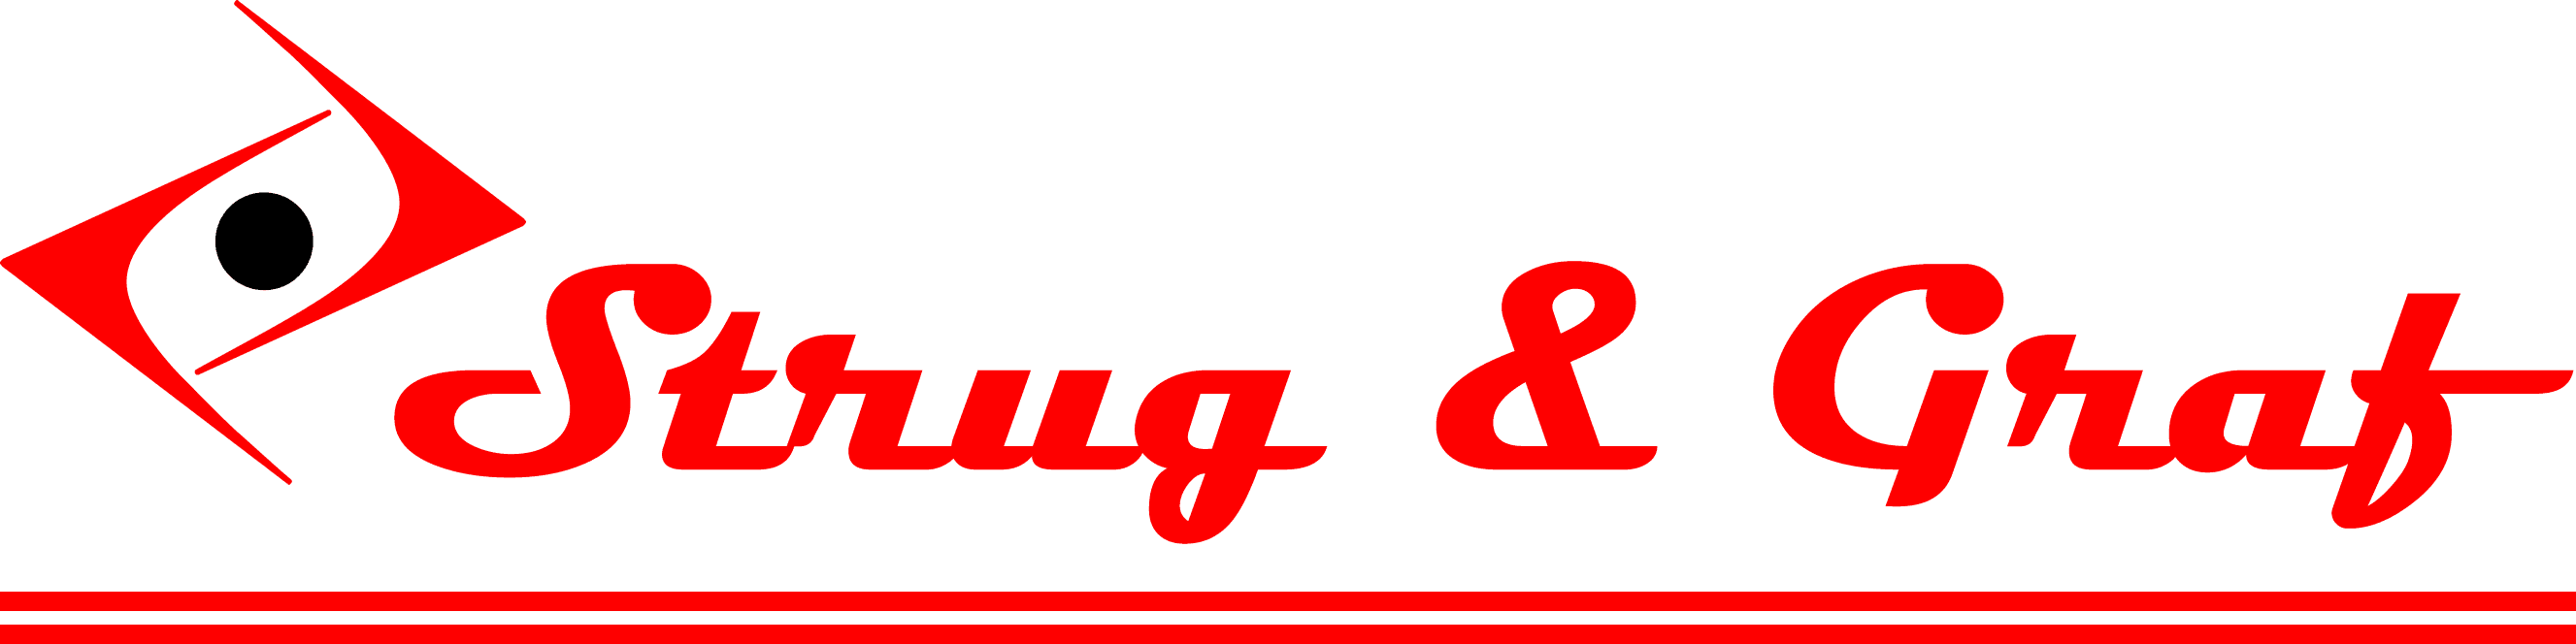 Logo Strug & Graf GmbH